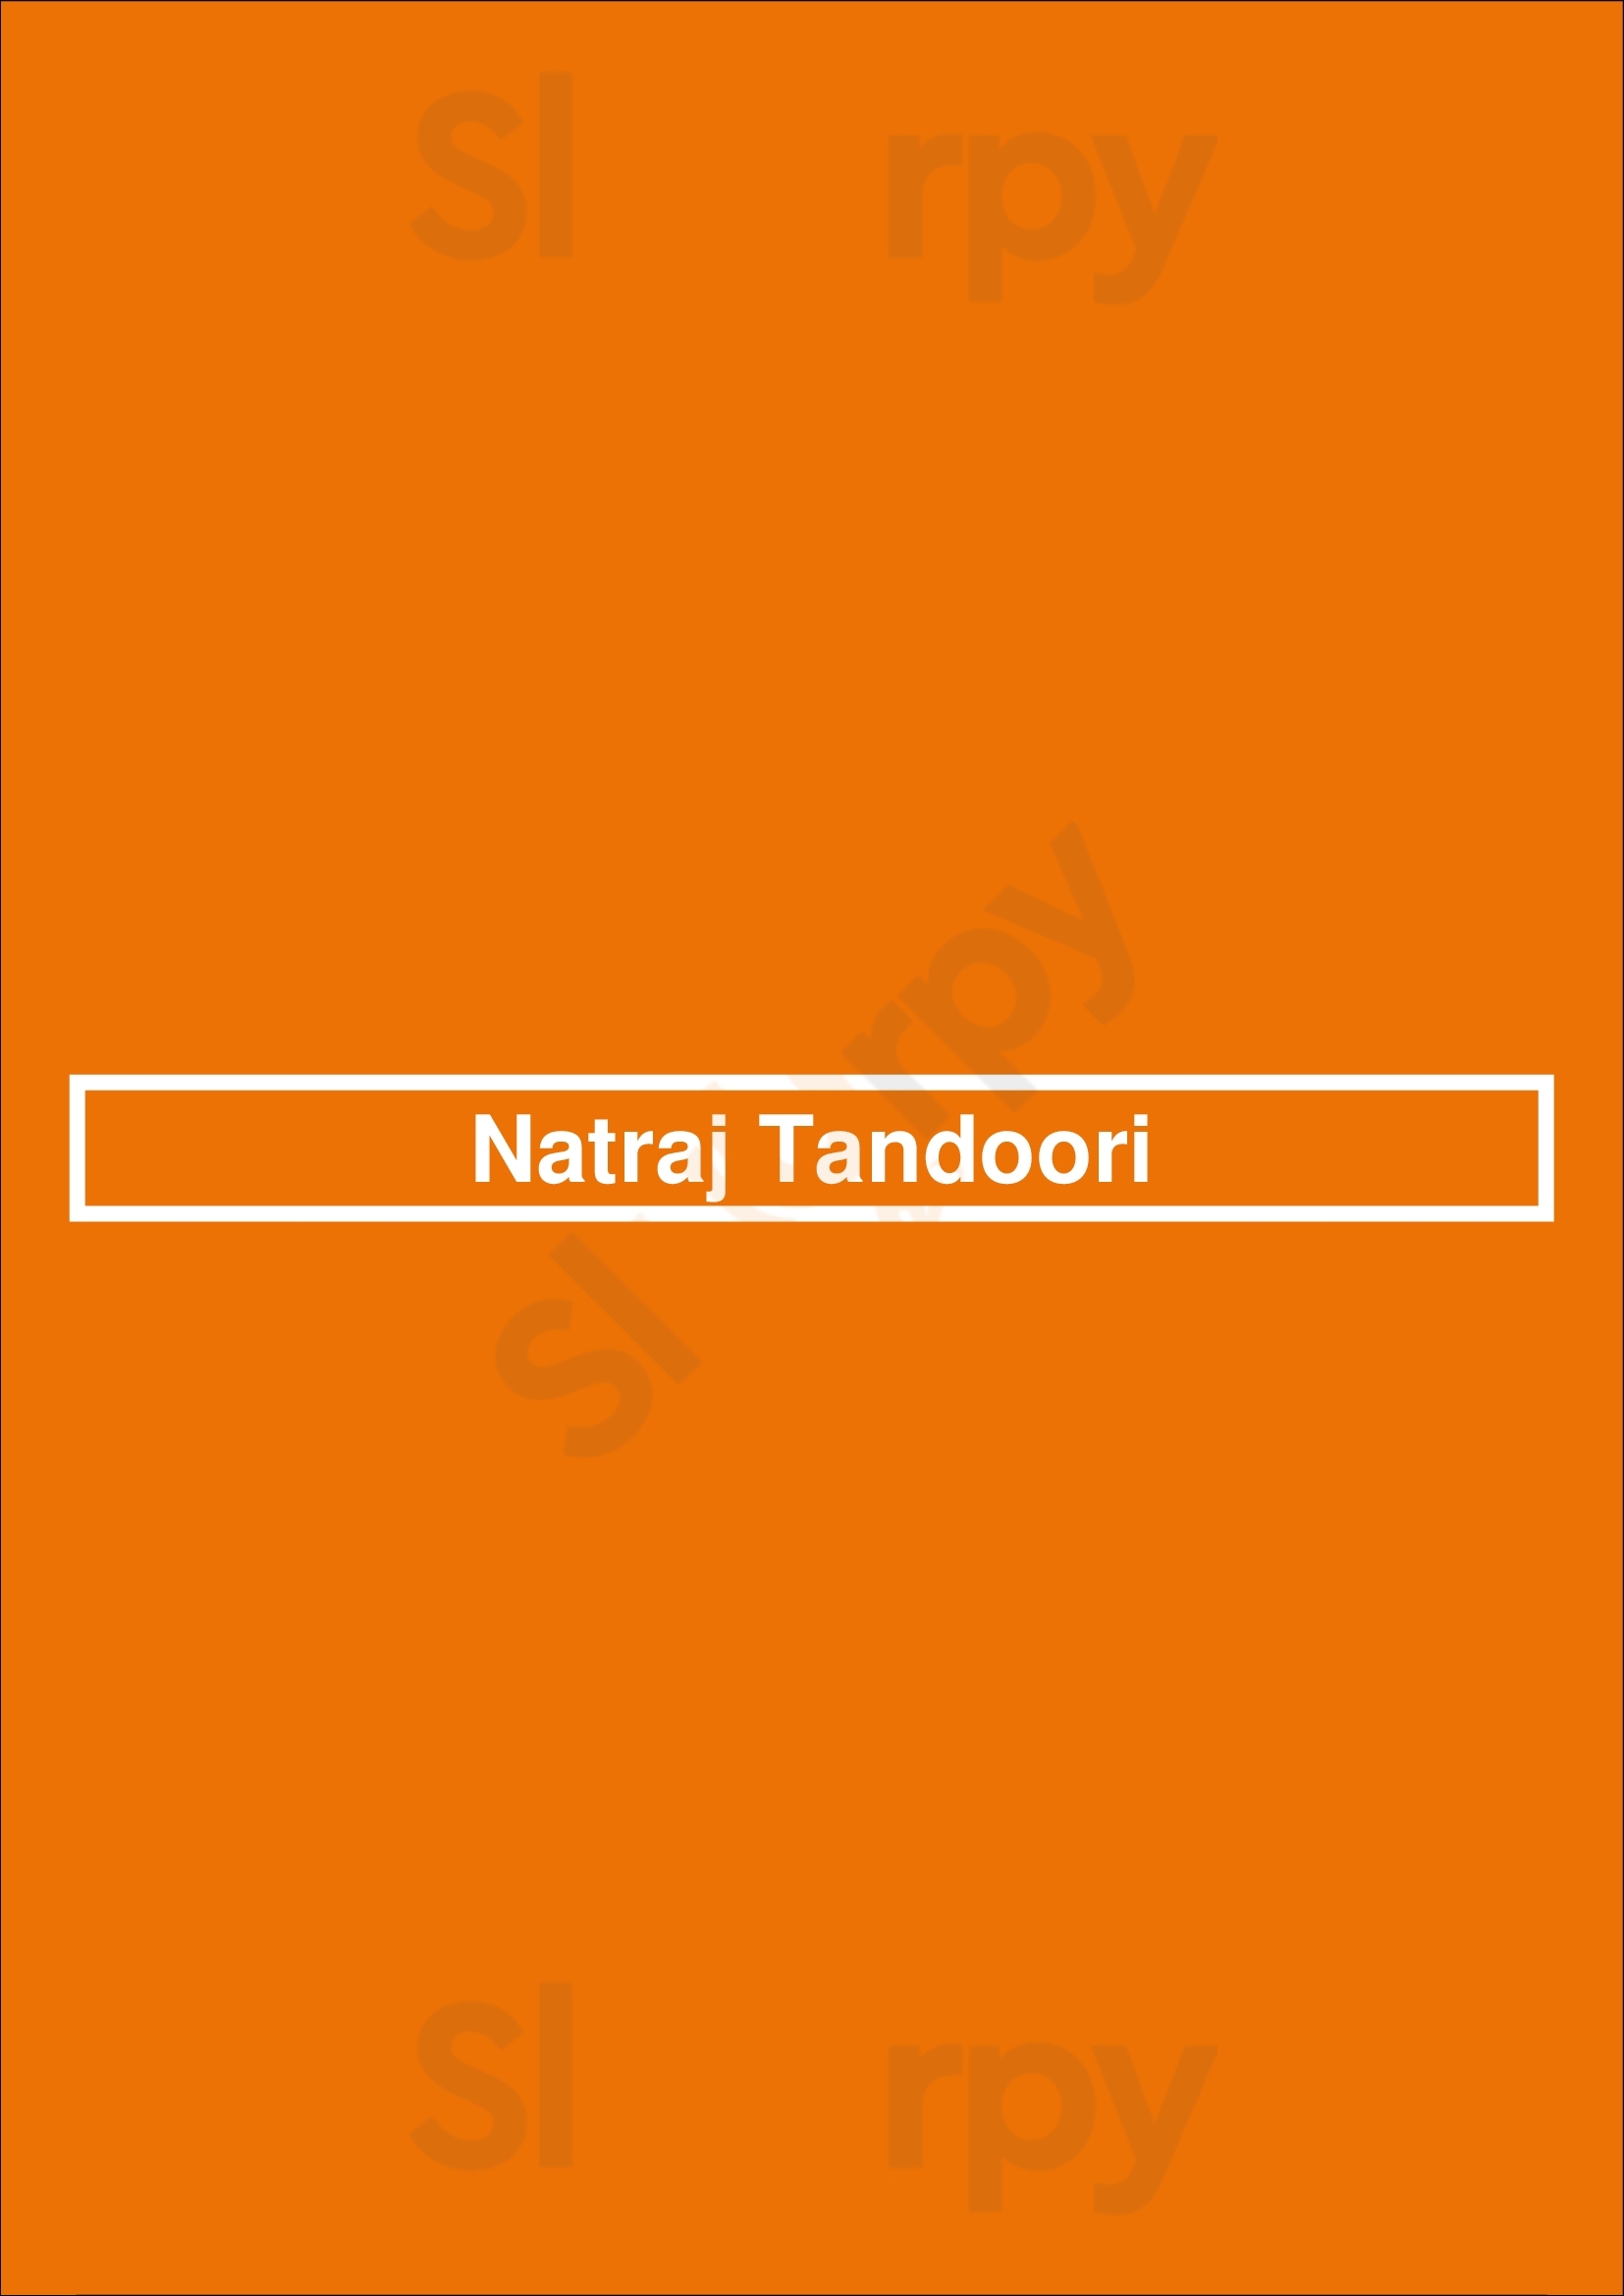 Natraj Tandoori Lisboa Menu - 1